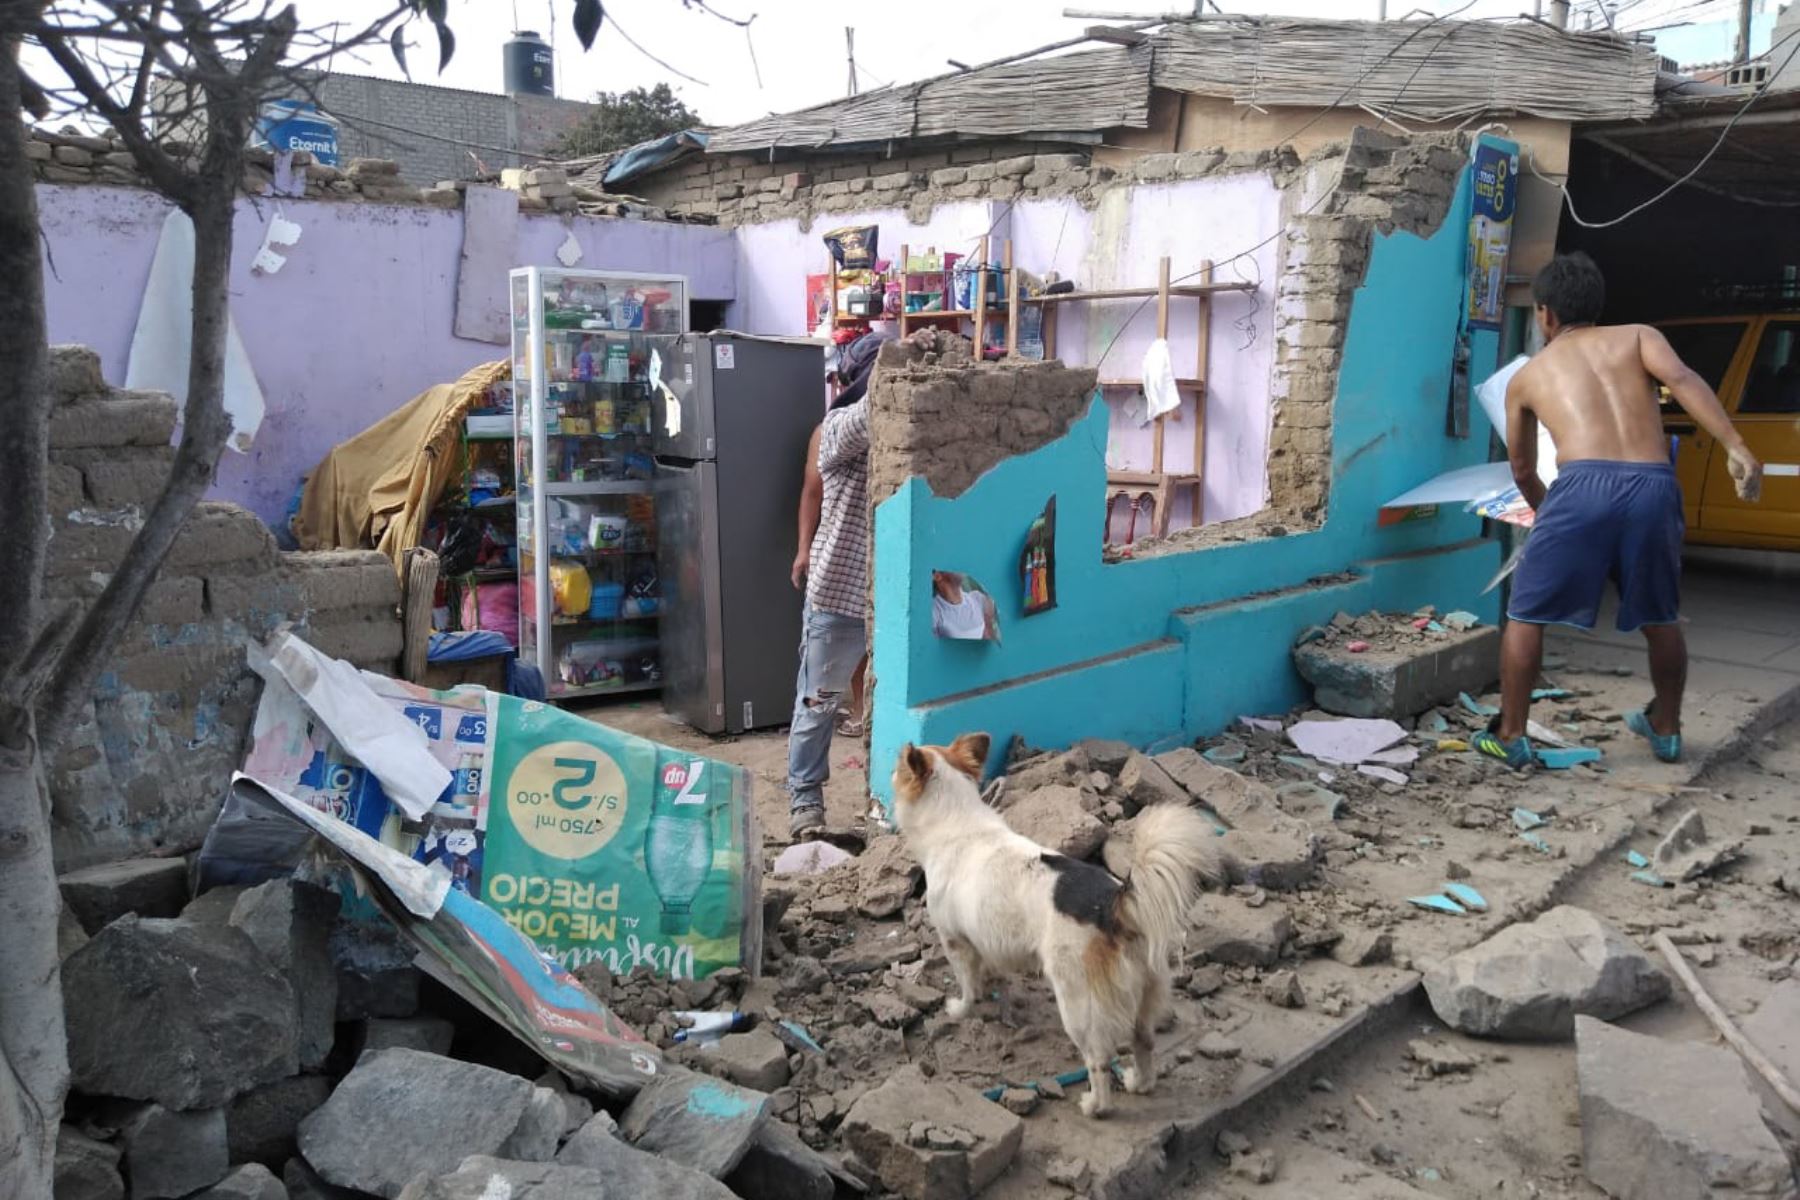 Vivienda de pueblo joven San Pedro, en Chimbote, colapsó por sismo de magnitud 5.3, confirmó Defensa Civil. Foto: ANDINA/Gonzalo Horna